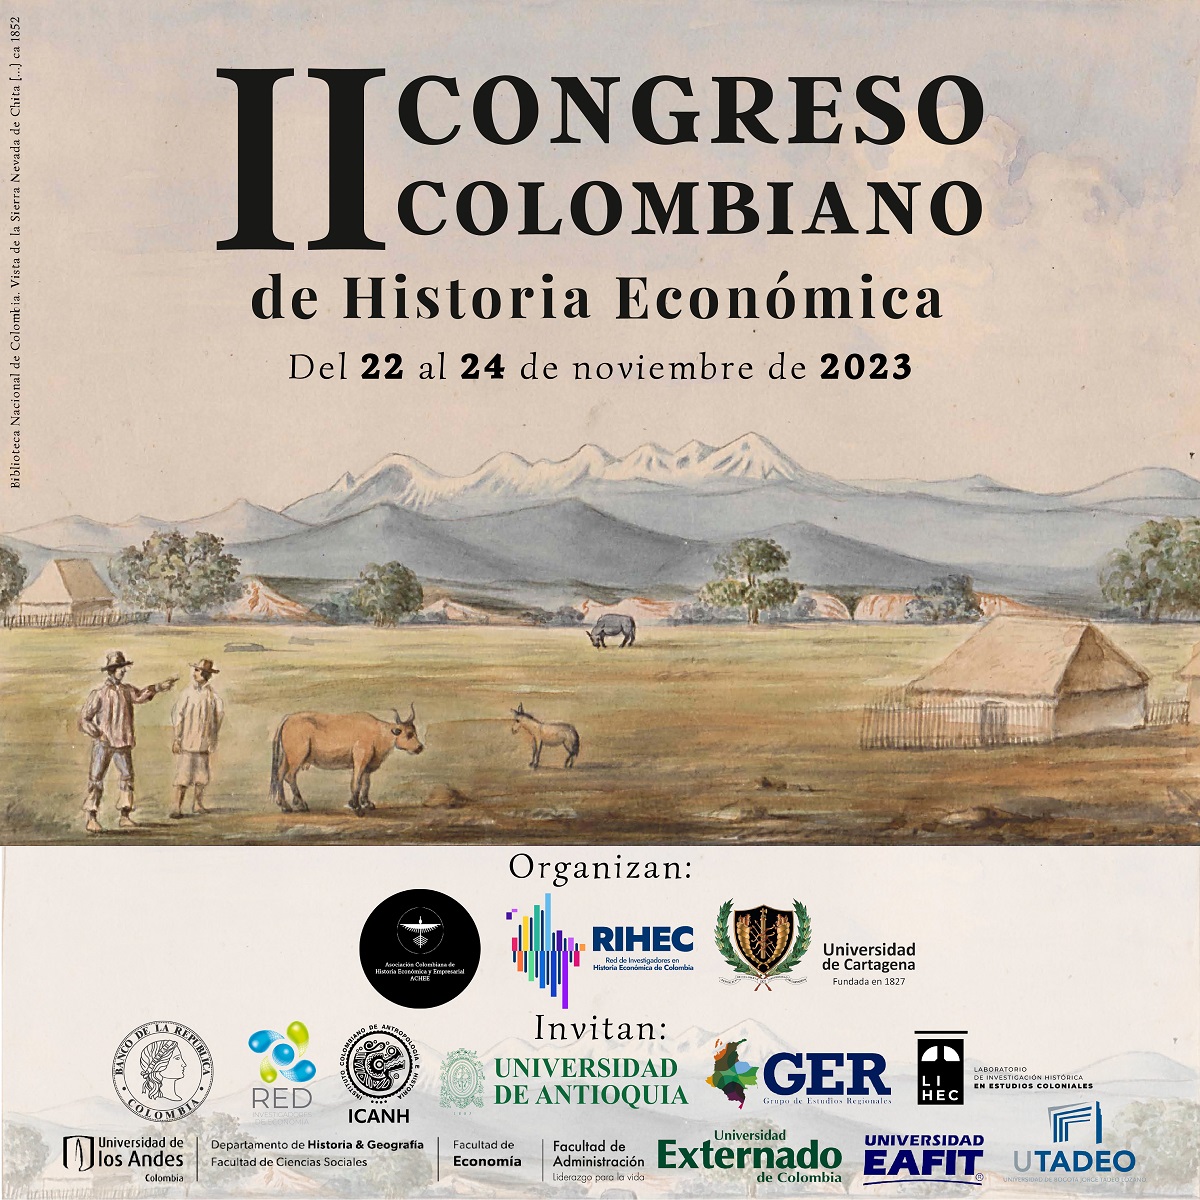 Segundo Congreso Colombiano de Historia Económica del 22 al 24 de noviembre de 2023